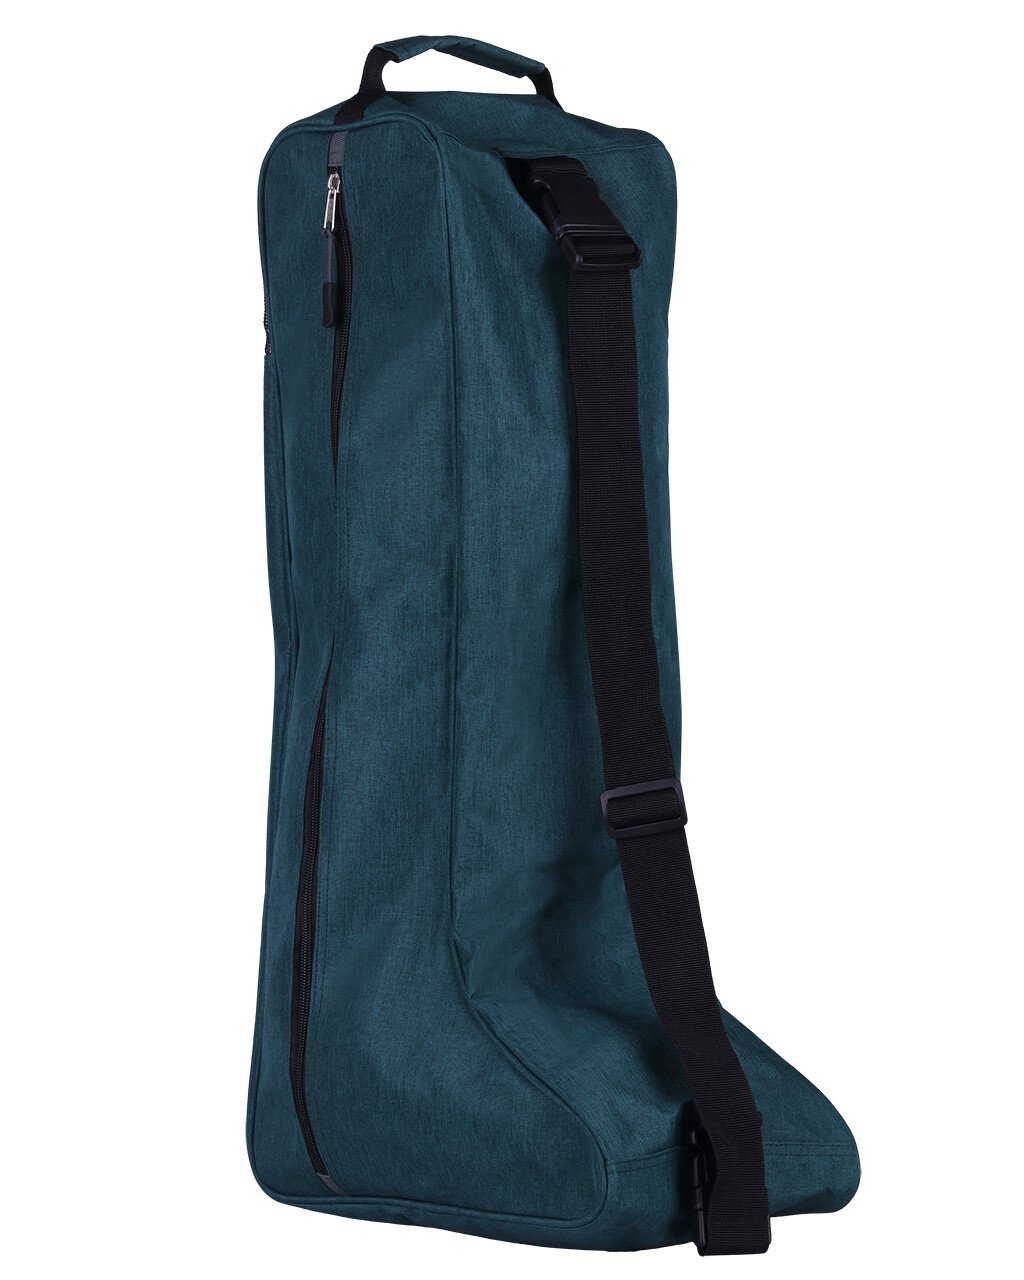 Udgangspunktet median Grisling QHP støvletaske til dine ridestøvler - køb QHP online her!